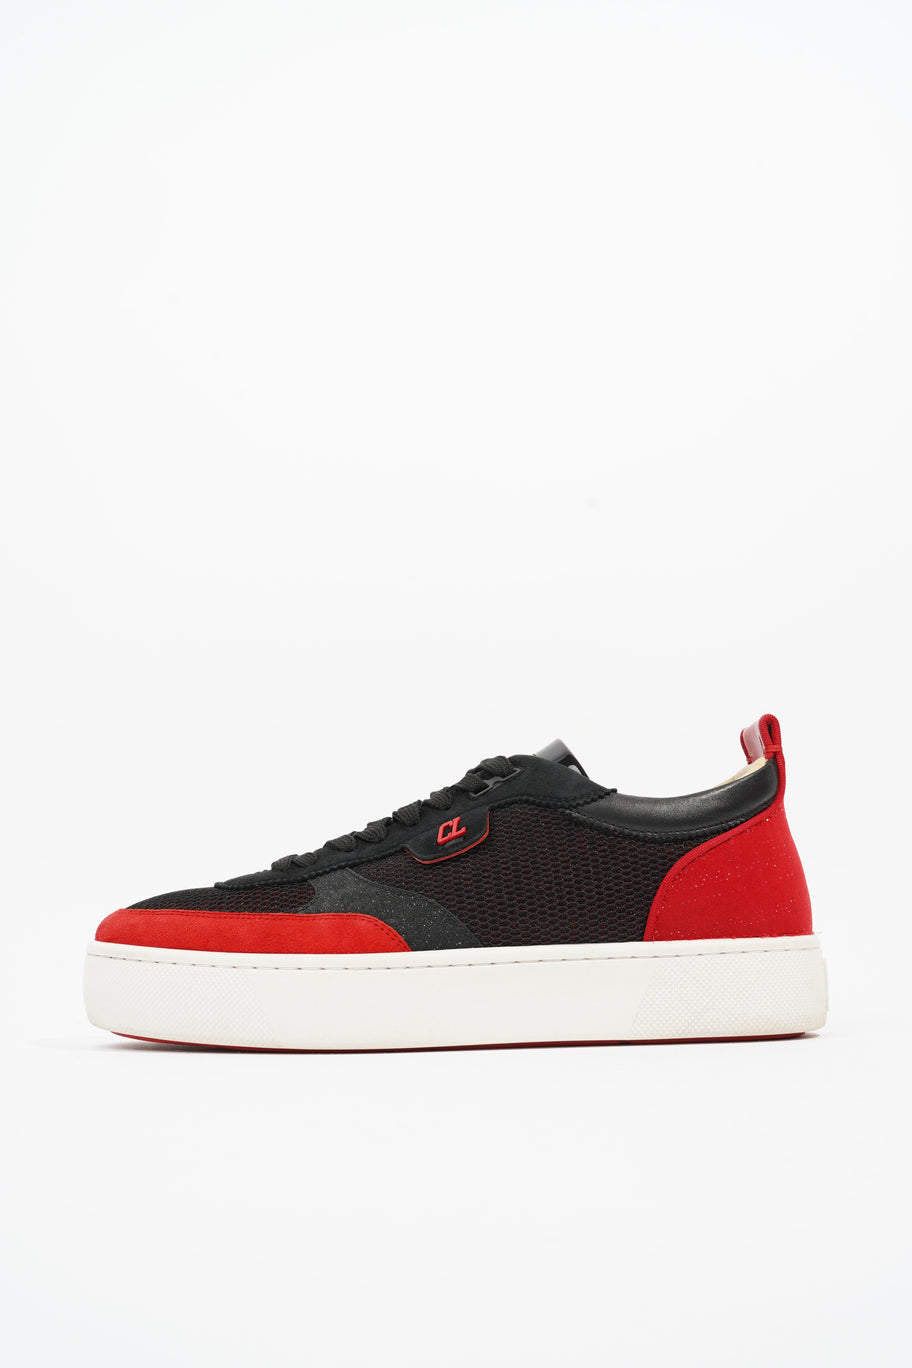 Happyrui Sneakers Black / Red Mesh EU 42.5 UK 8.5 Image 5